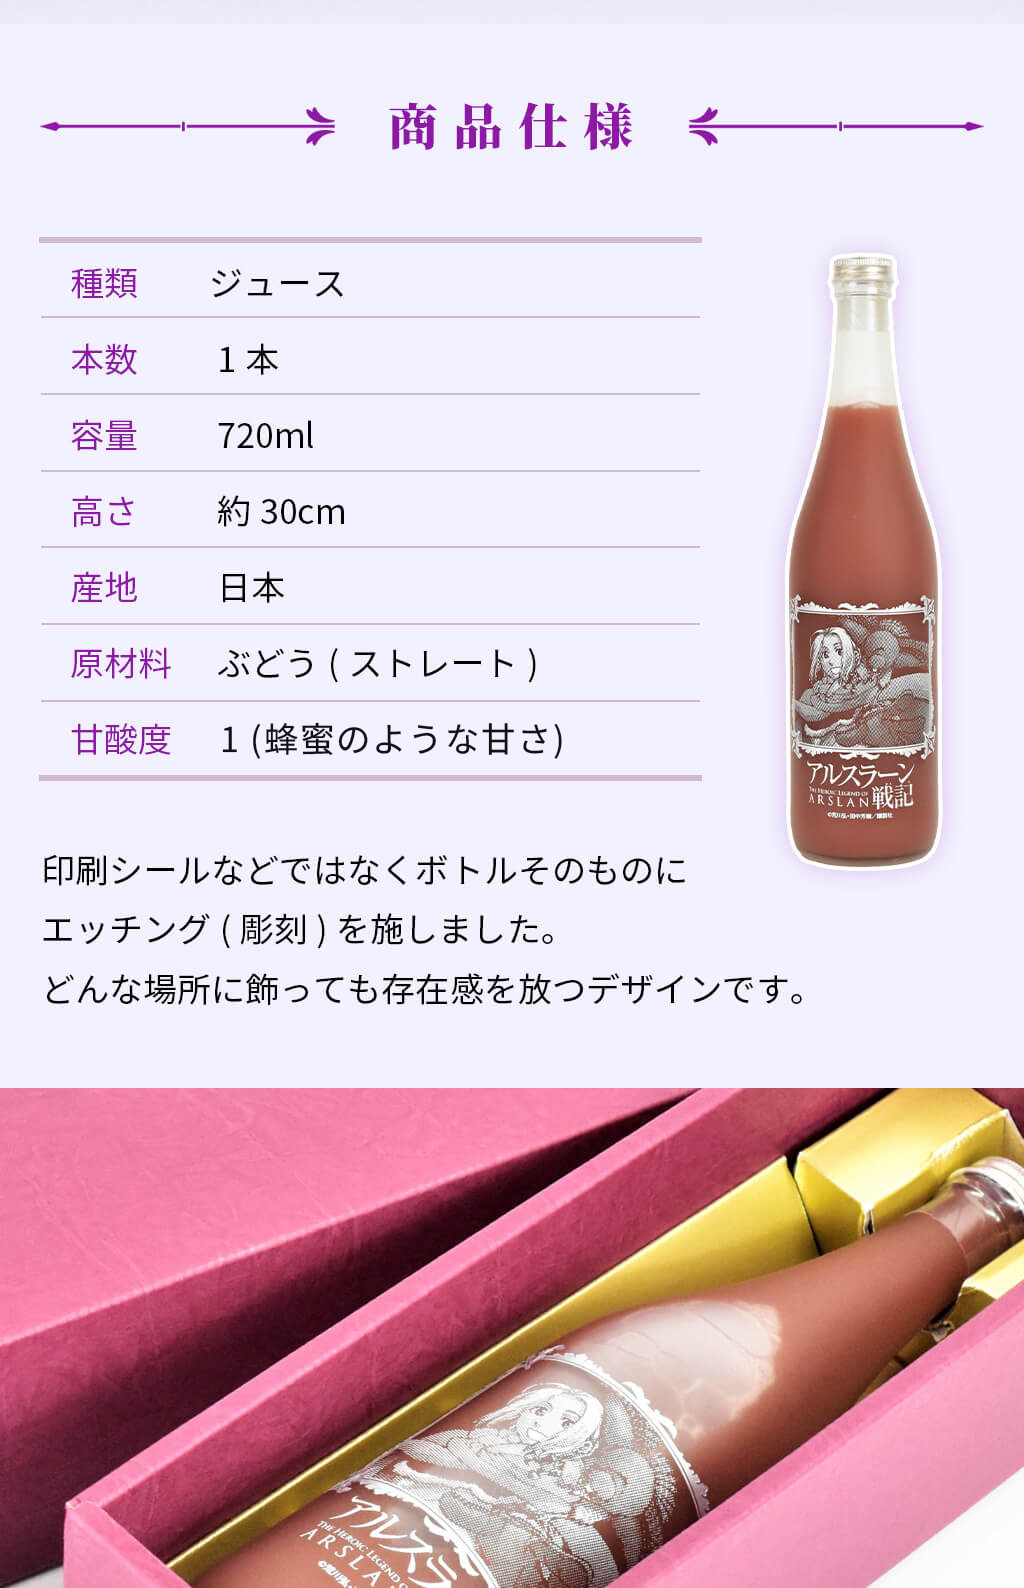 印刷シールなどではなくボトルそのものにエッチング(彫刻)を施した逸品！ブドウジュースの原材料には日本産ぶどうを使用。